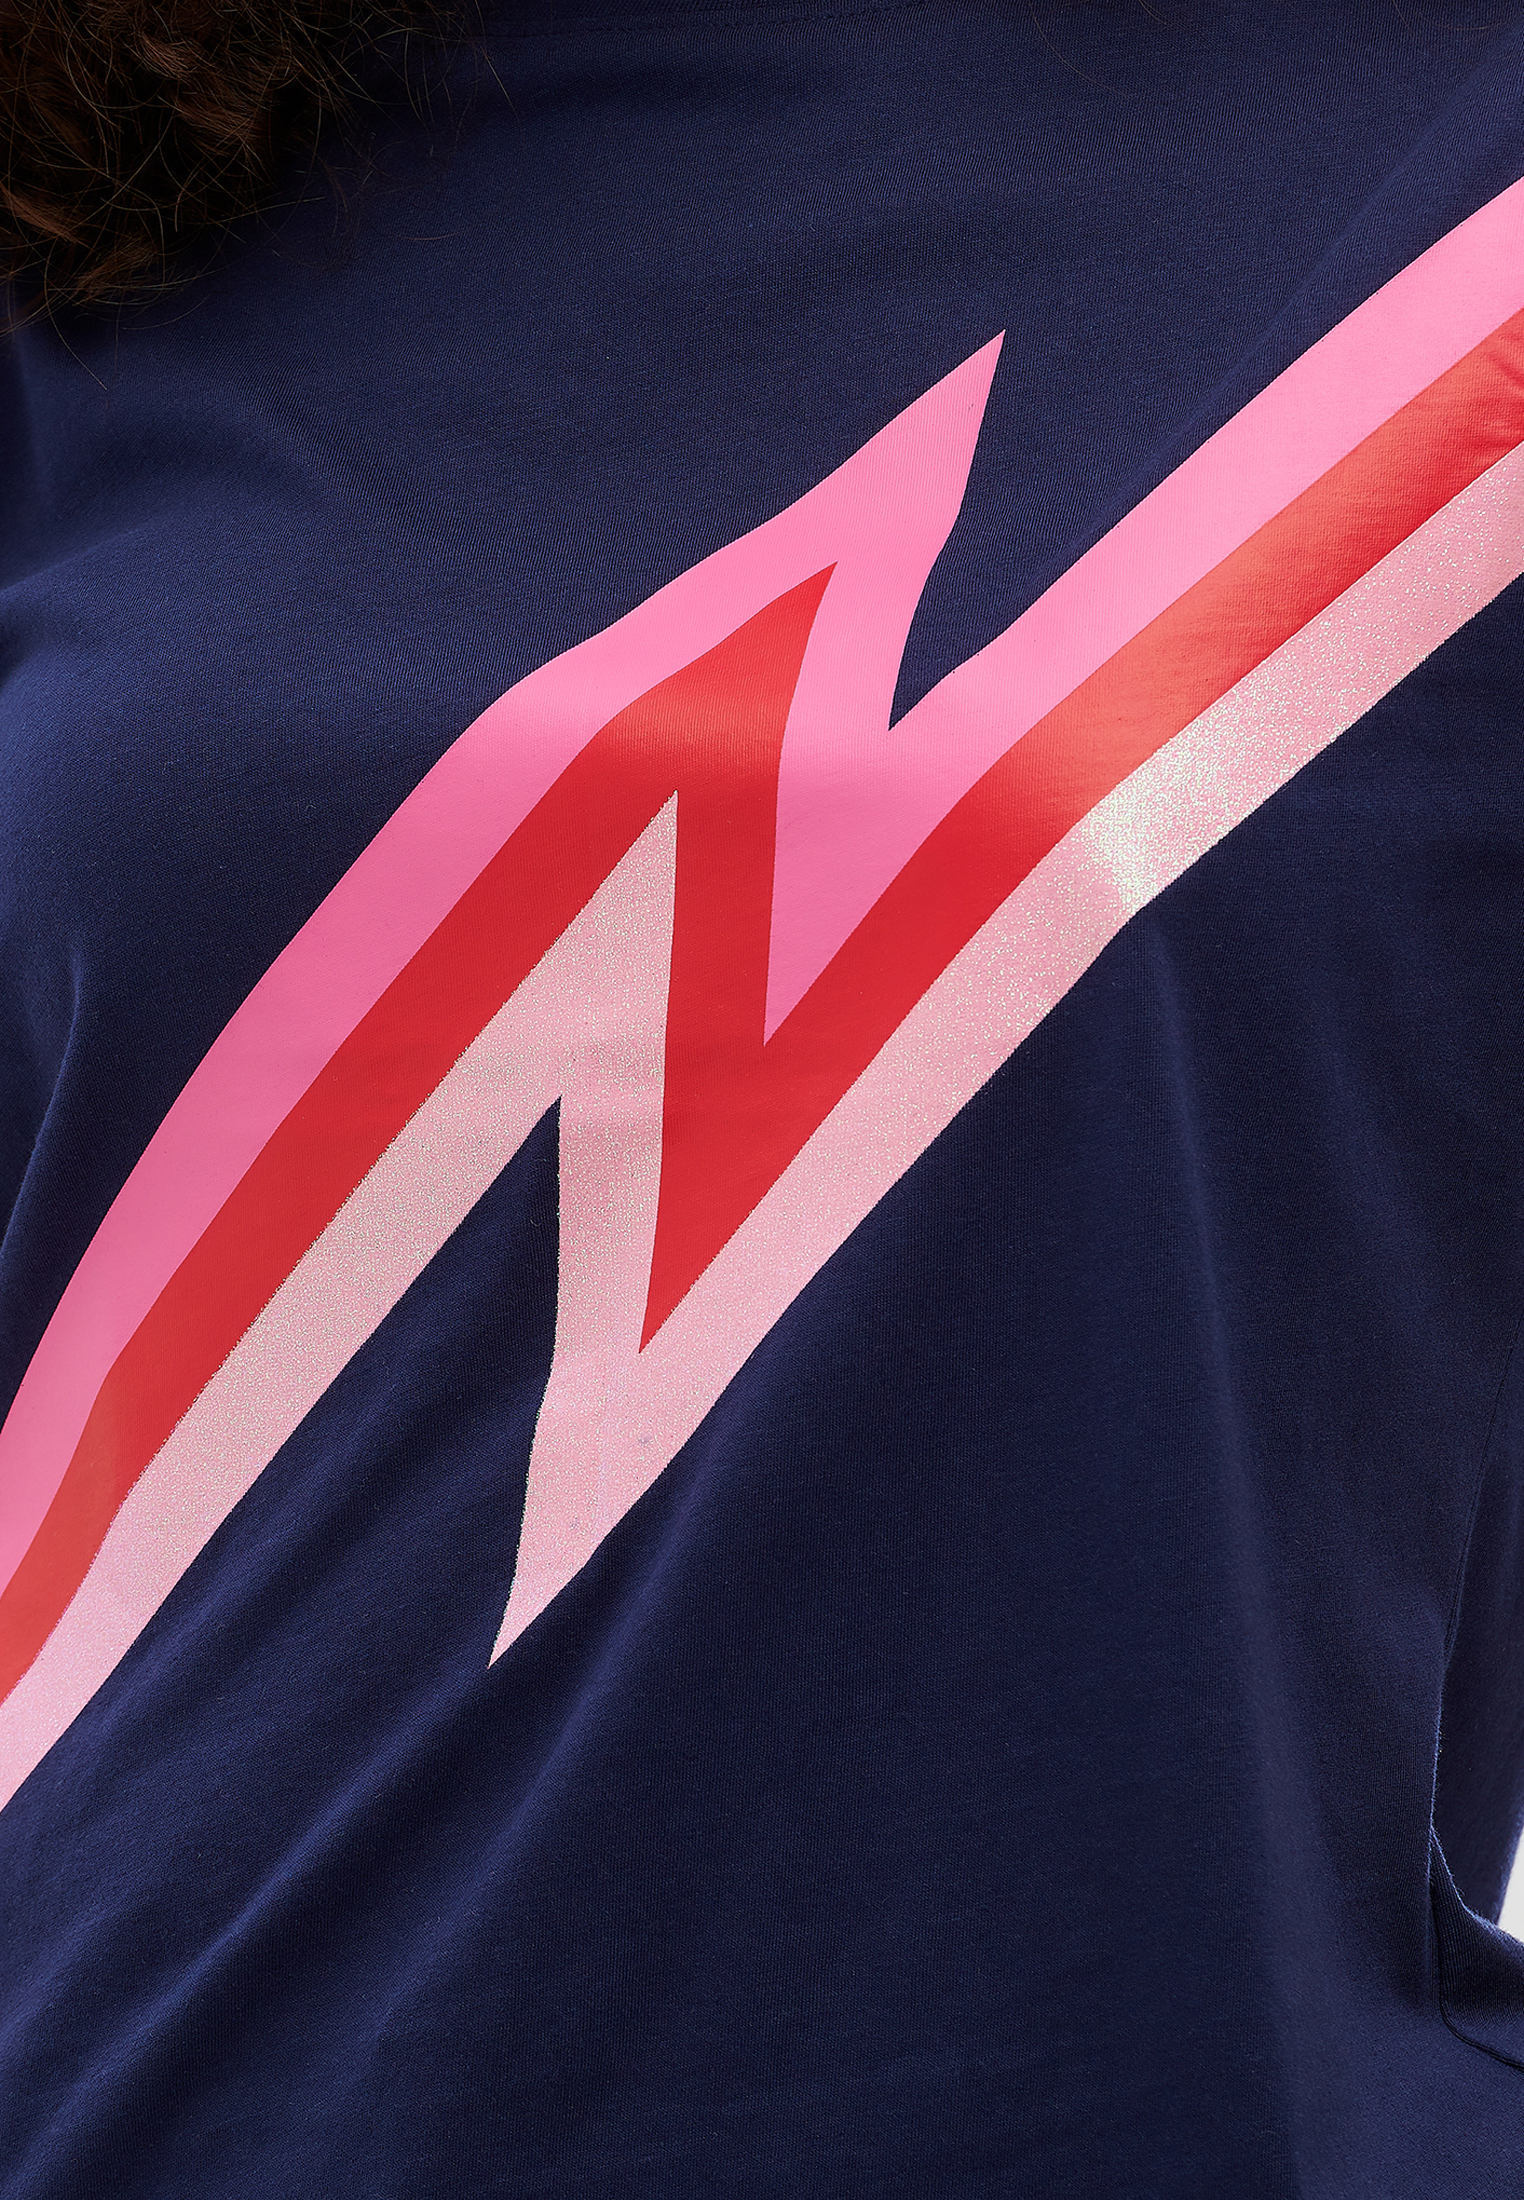 W09SZ Koszulki & topy Sugarhill Brighton Koszulka Maggie Zap  Pink Lightning w kolorze Granatowym 